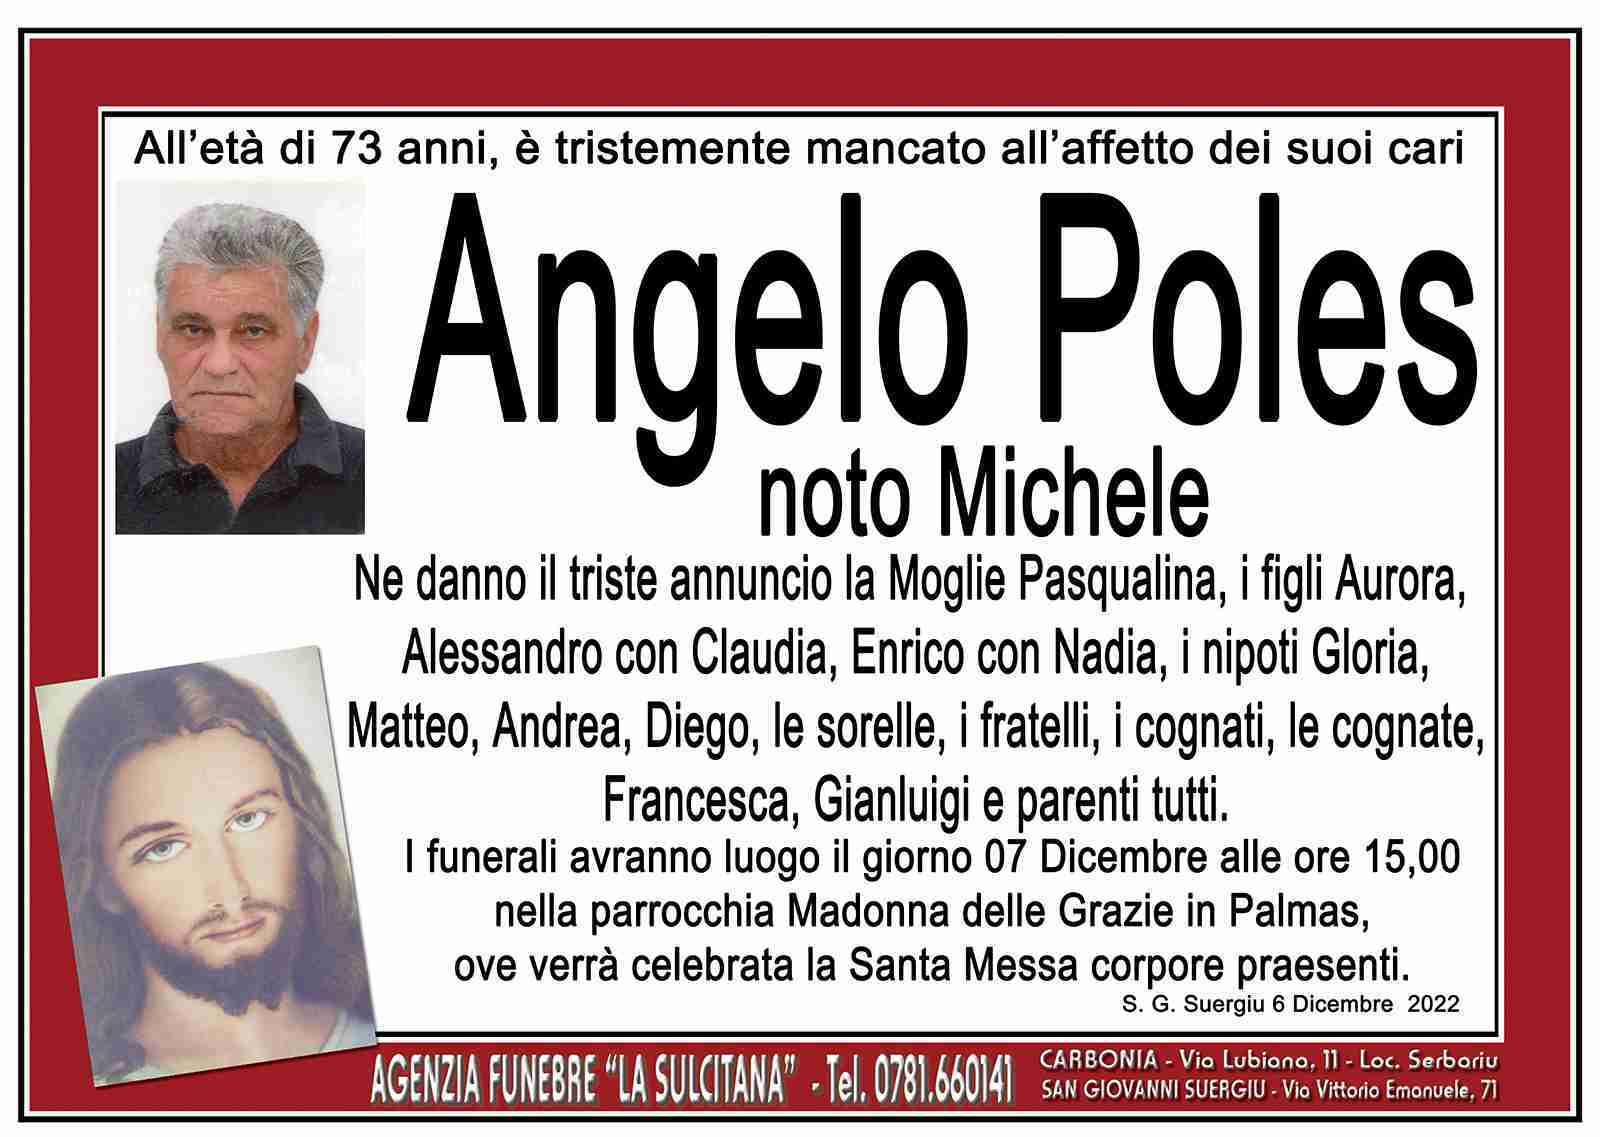 Angelo Poles